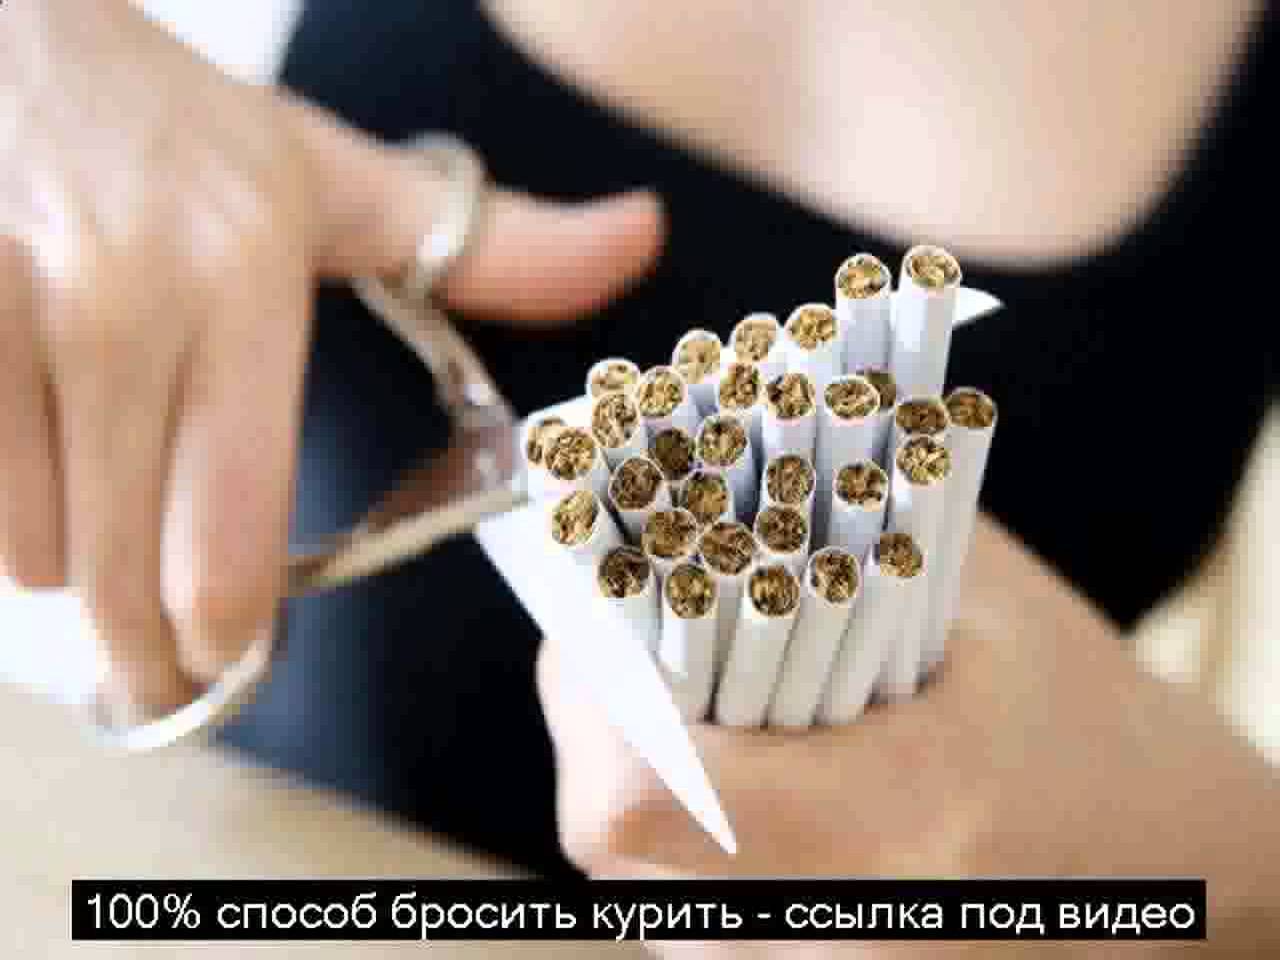 Как покончить с табачной зависимостью и бросить курить самостоятельно?